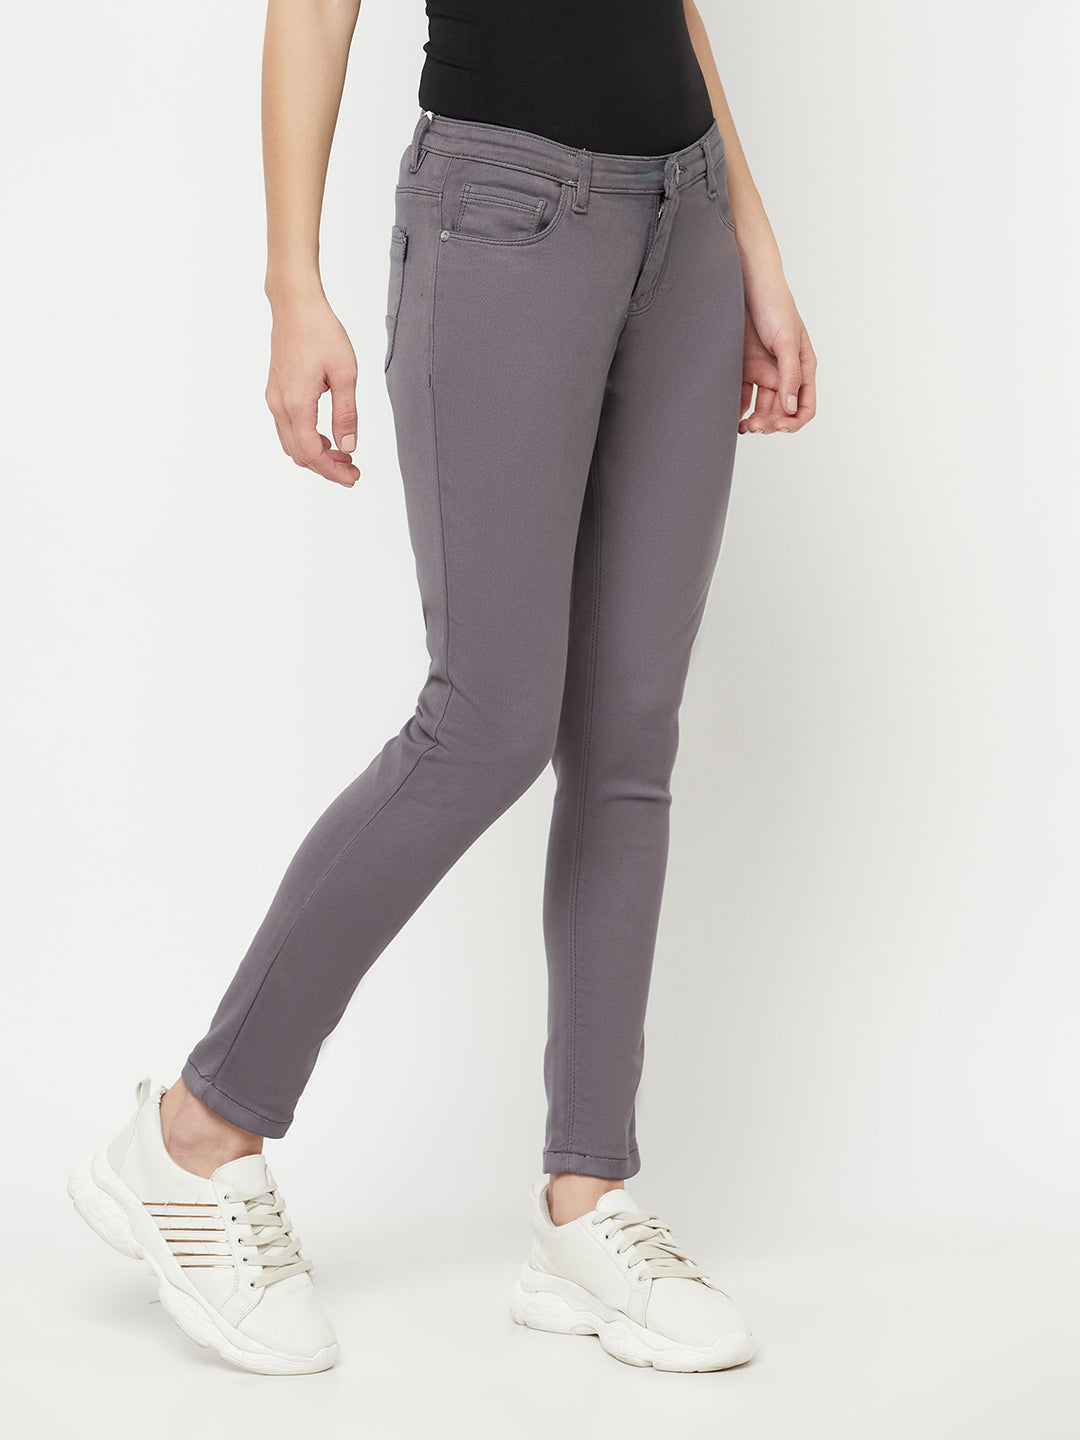 Grey Jeans - Women Jeans